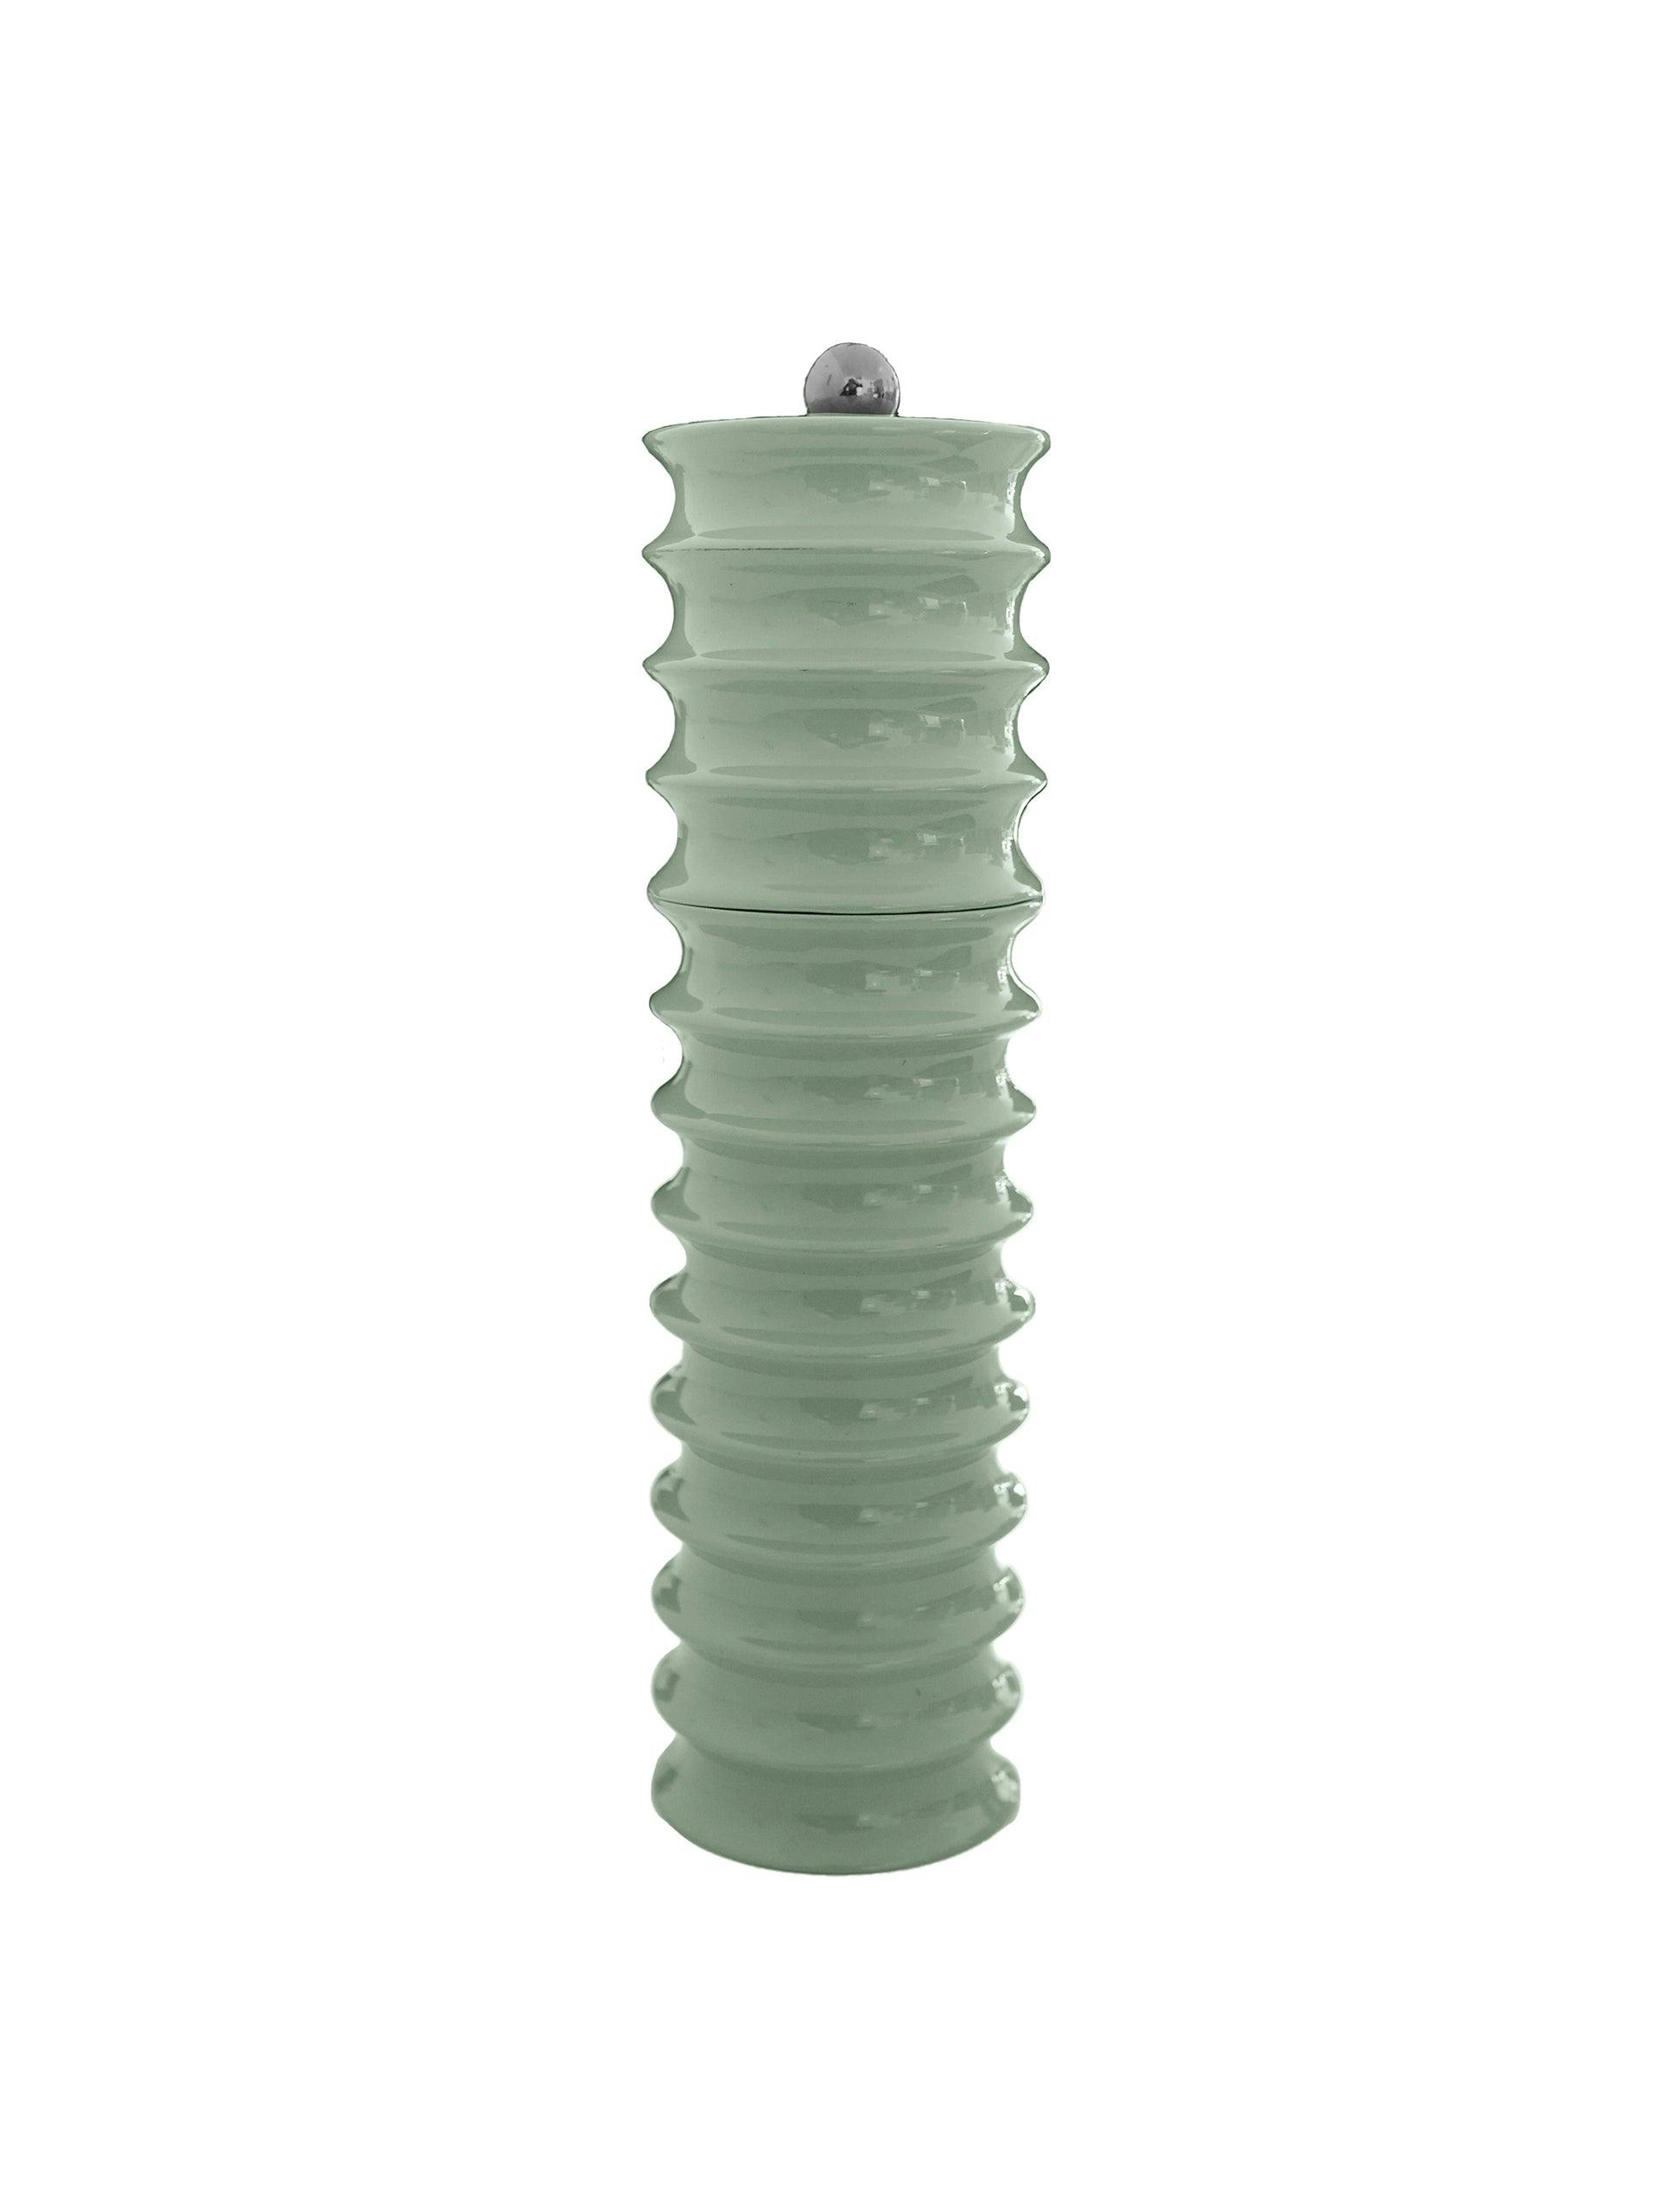 Twister salt/pepper grinder in Sage Green